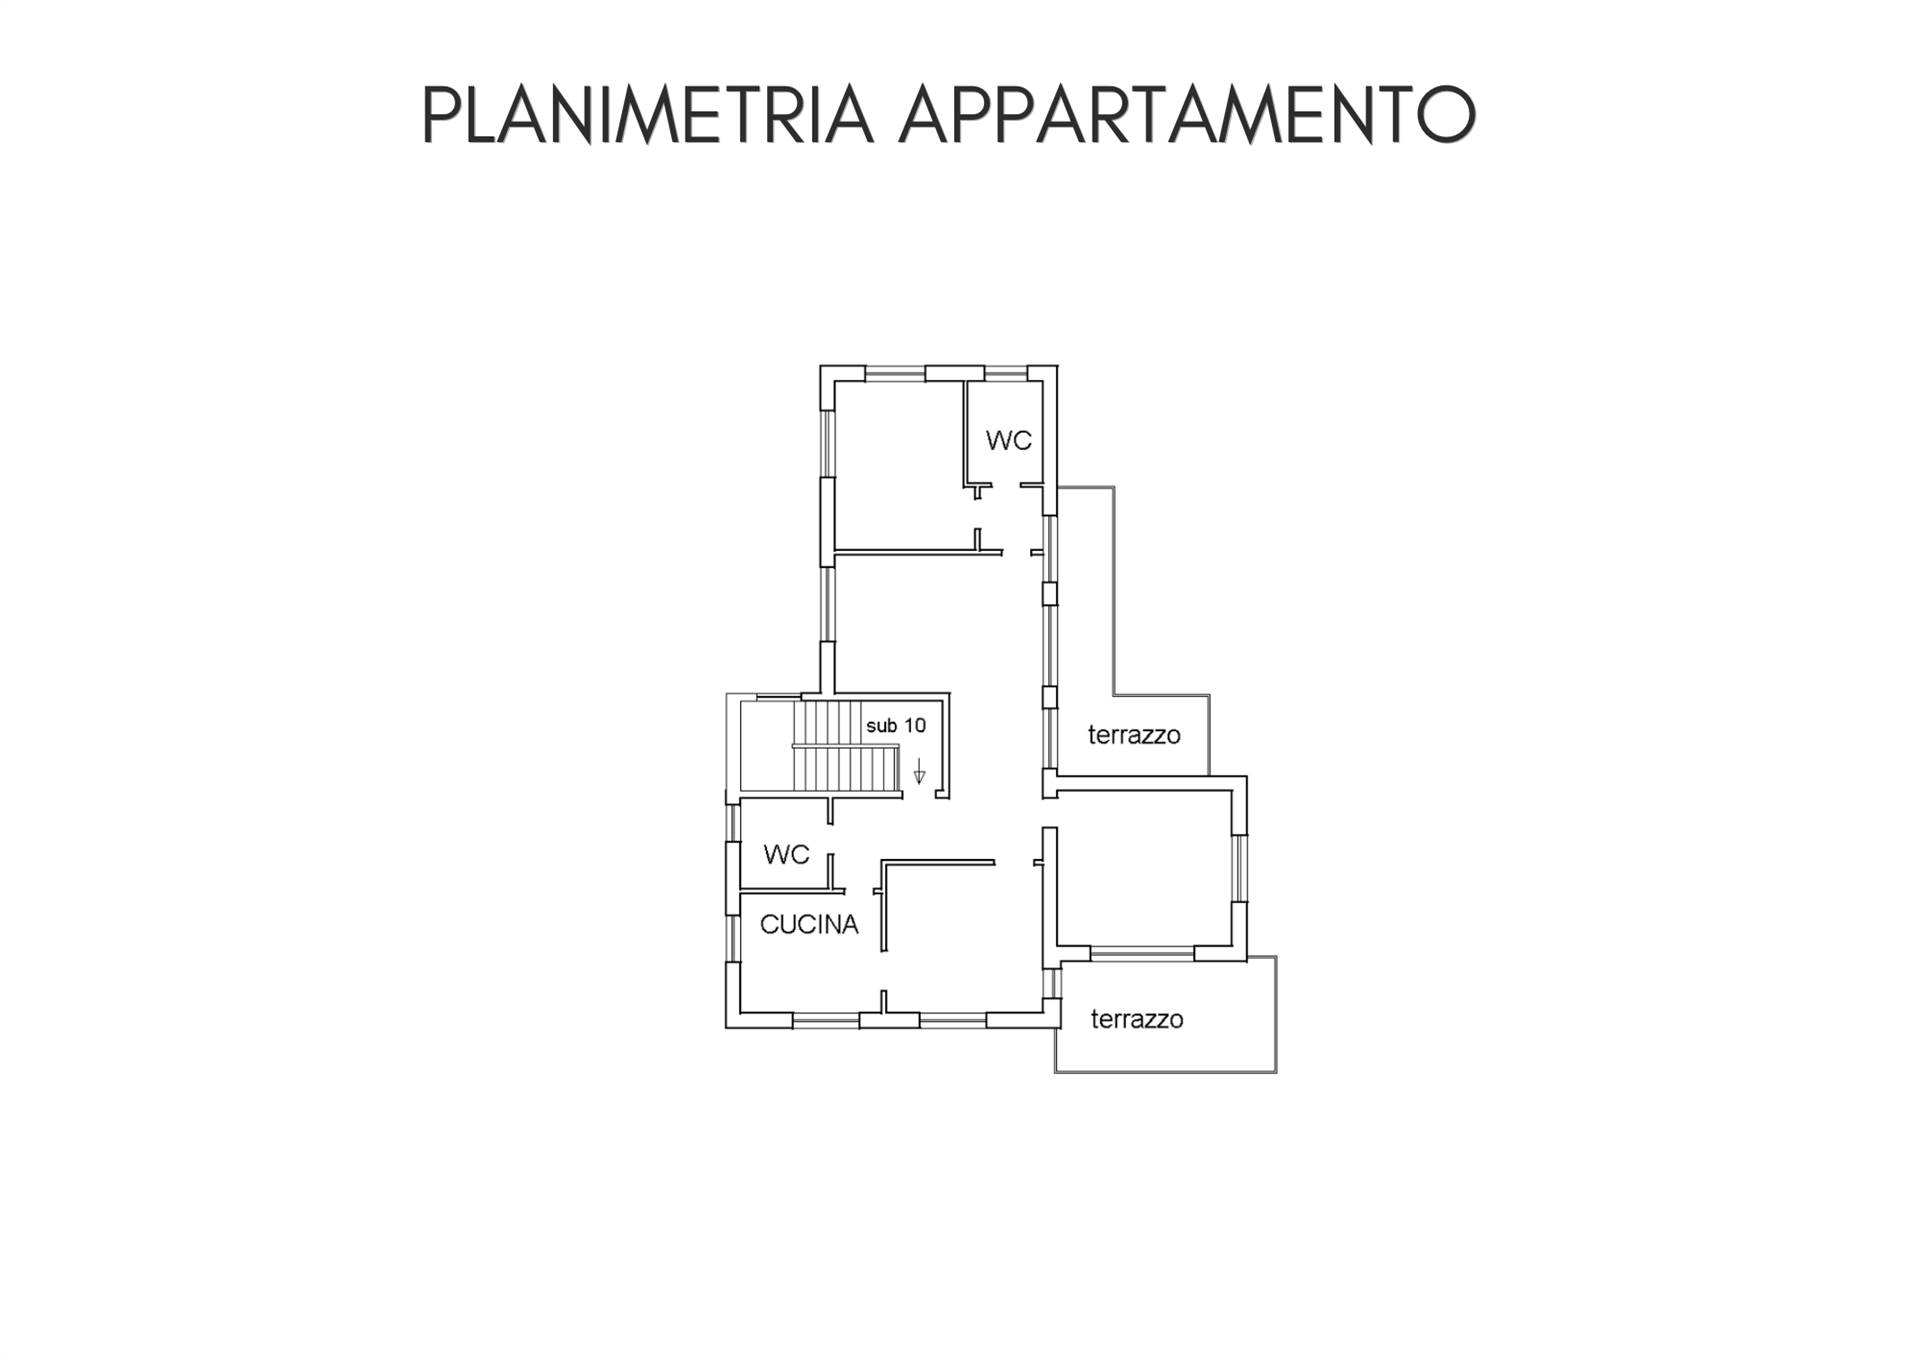 Appartamento a La spezia con 5 locali di 151 m2 - PLANIMETRIA